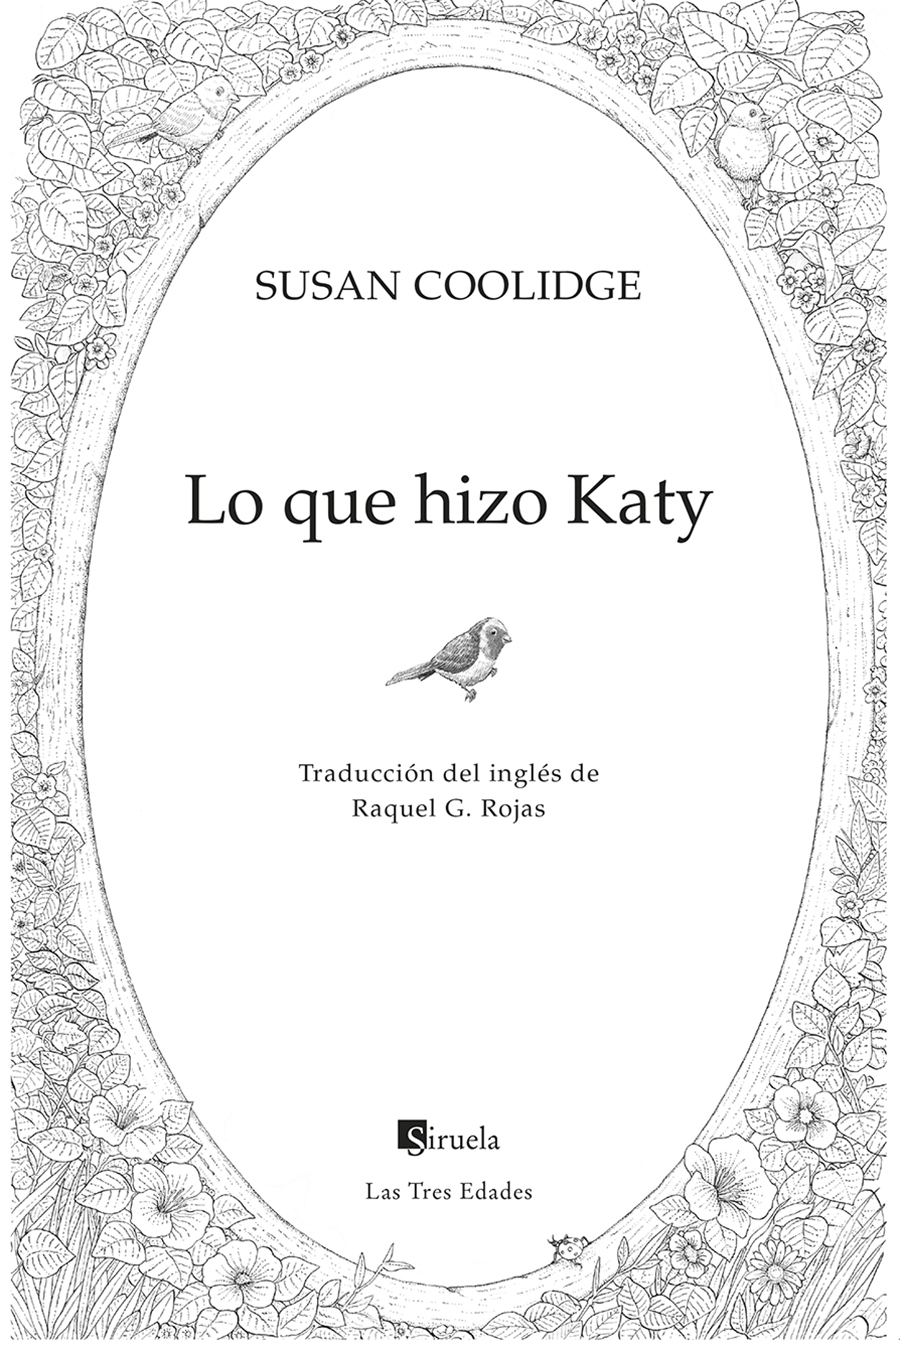 Portadilla: Lo que hizo Katy. Susan Coolidge